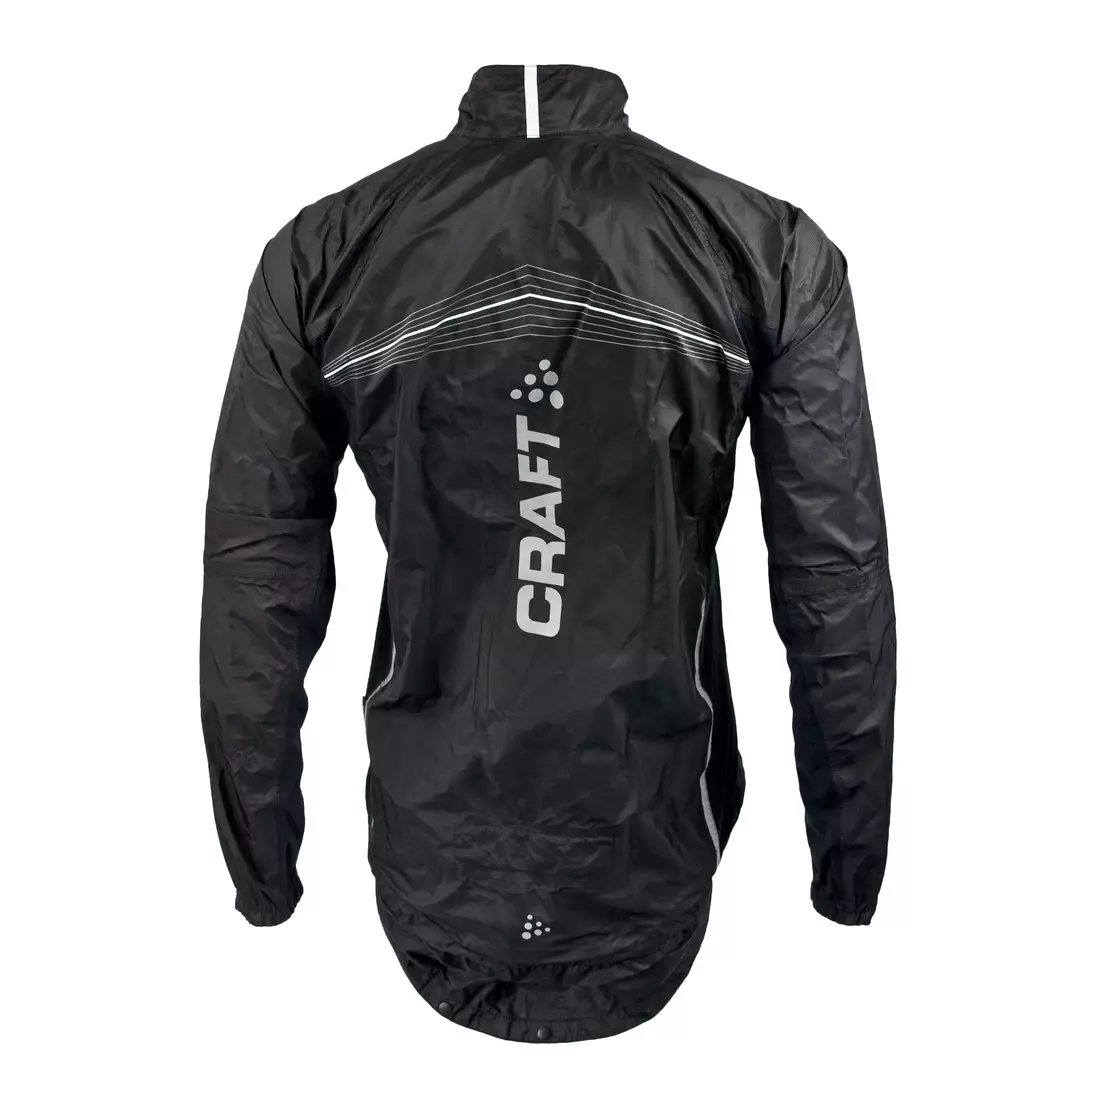 CRAFT ELITE BIKE - geaca de ciclism pentru barbati rezistenta la ploaie 1902576-9900, culoare: negru